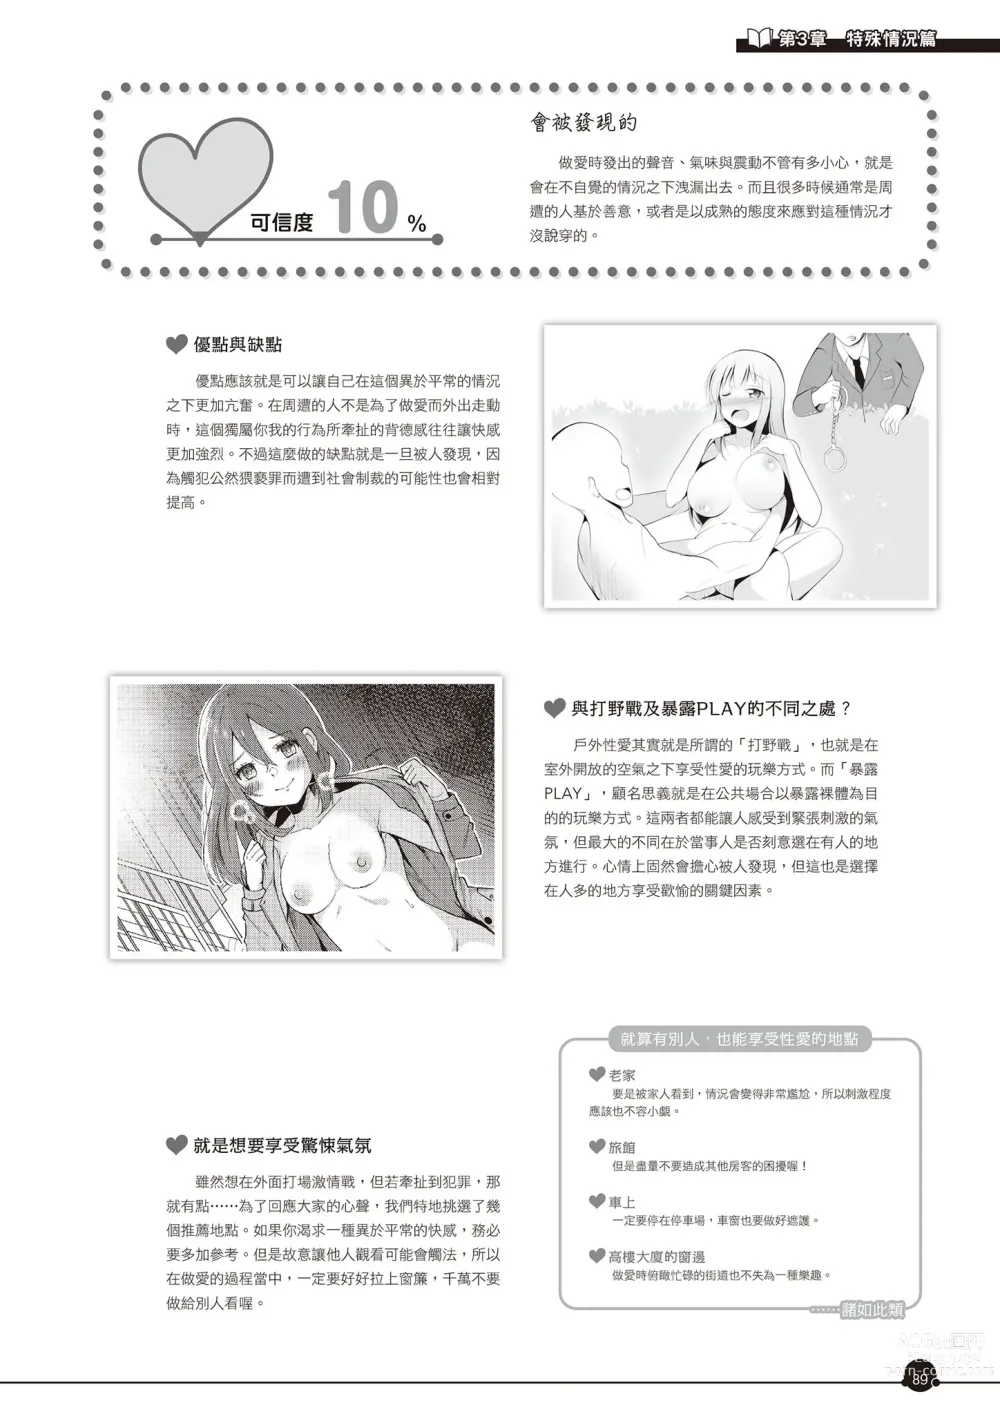 Page 90 of manga 完全實用版 成人漫畫沒告訴你的性愛真相